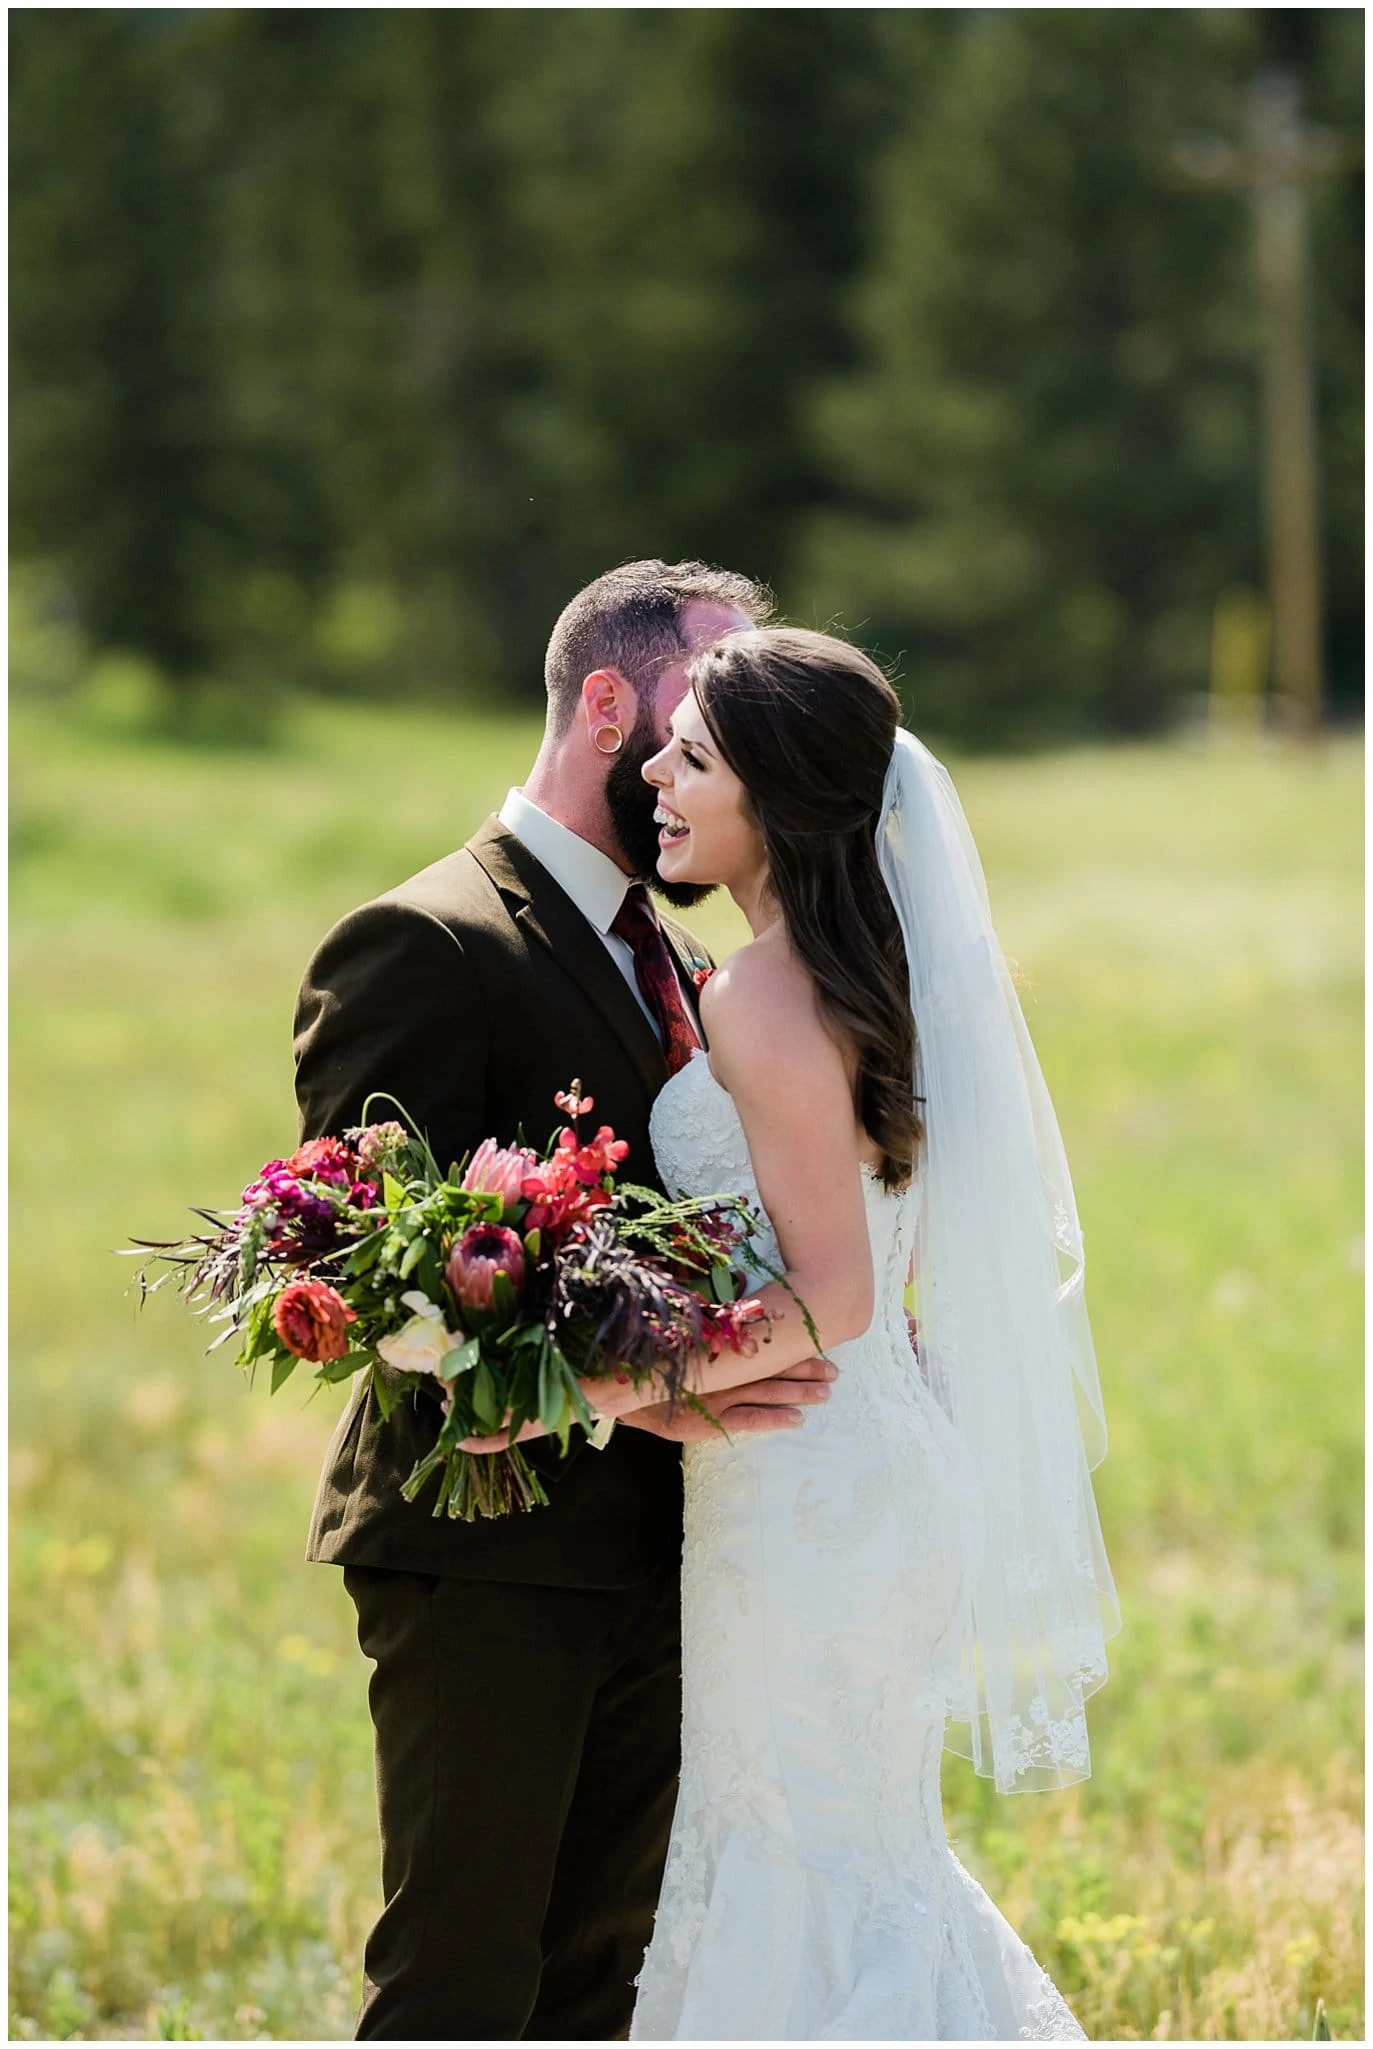 joyful bride at colorado outdoor wedding photo